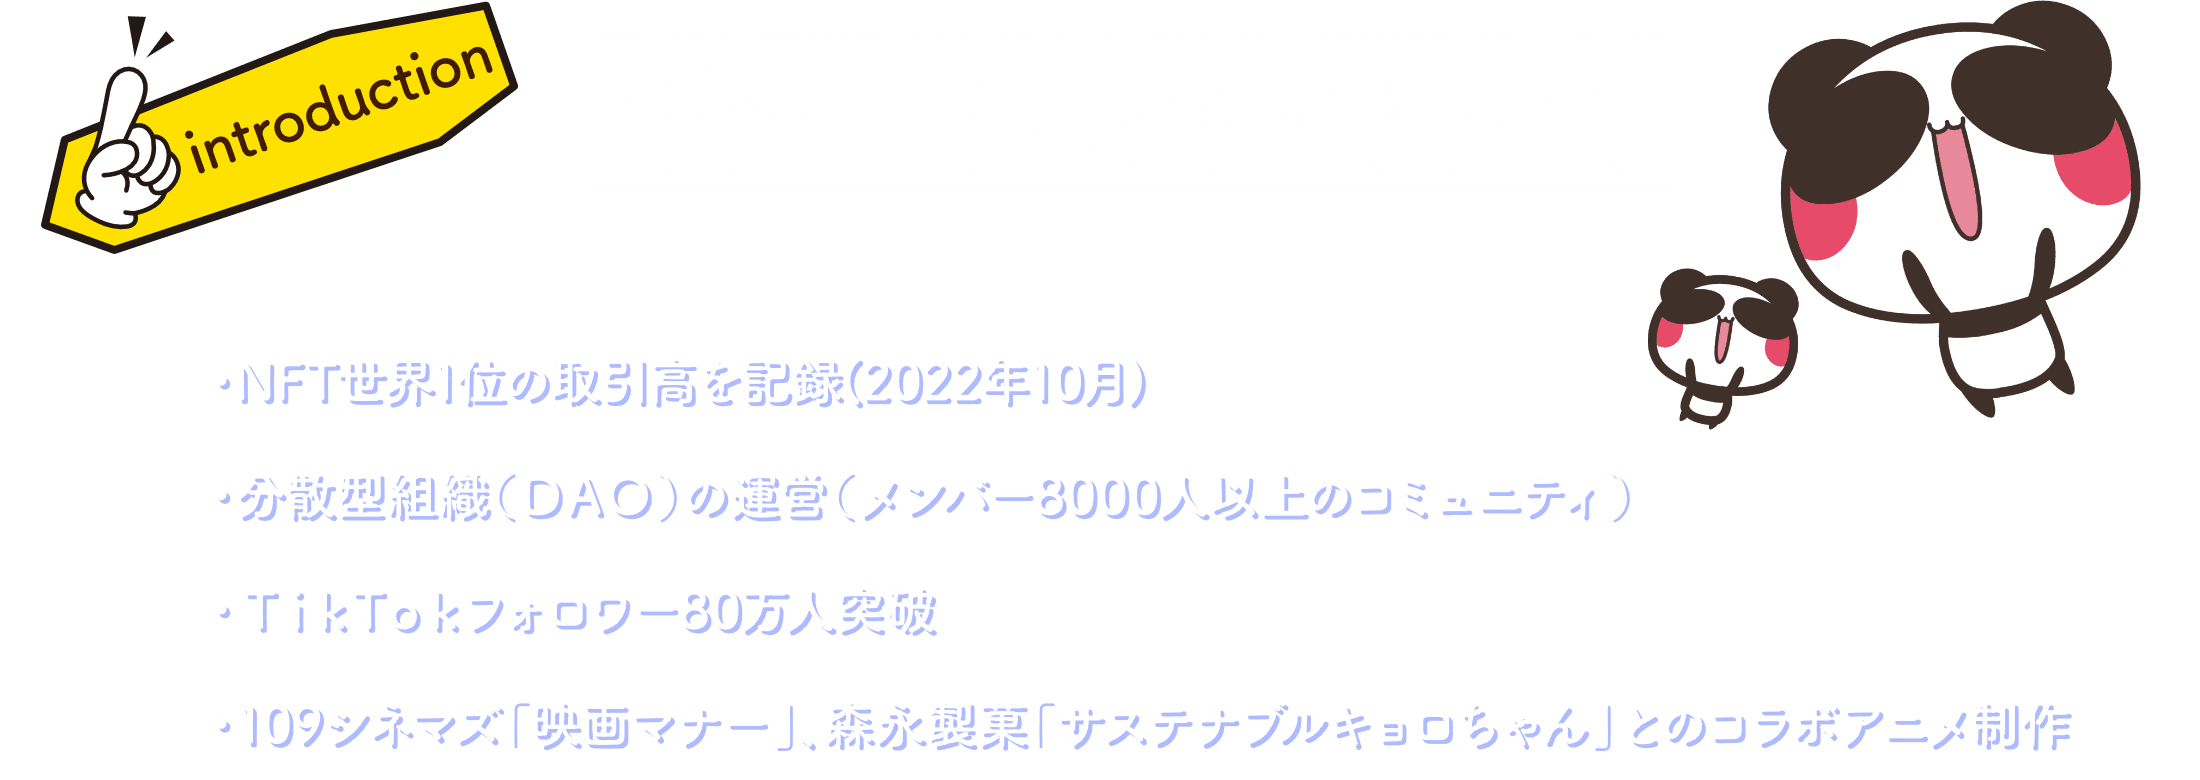 What is Aopanda Party? ・NFT世界1位の取引高を記録 ・分散型組織（DAO）の運営（メンバー8000人以上のコミュニティ） ・TikTokフォロワー80万人突破 ・東京オリンピックや森永、オリックスバッファローズとのコラボアニメ製作